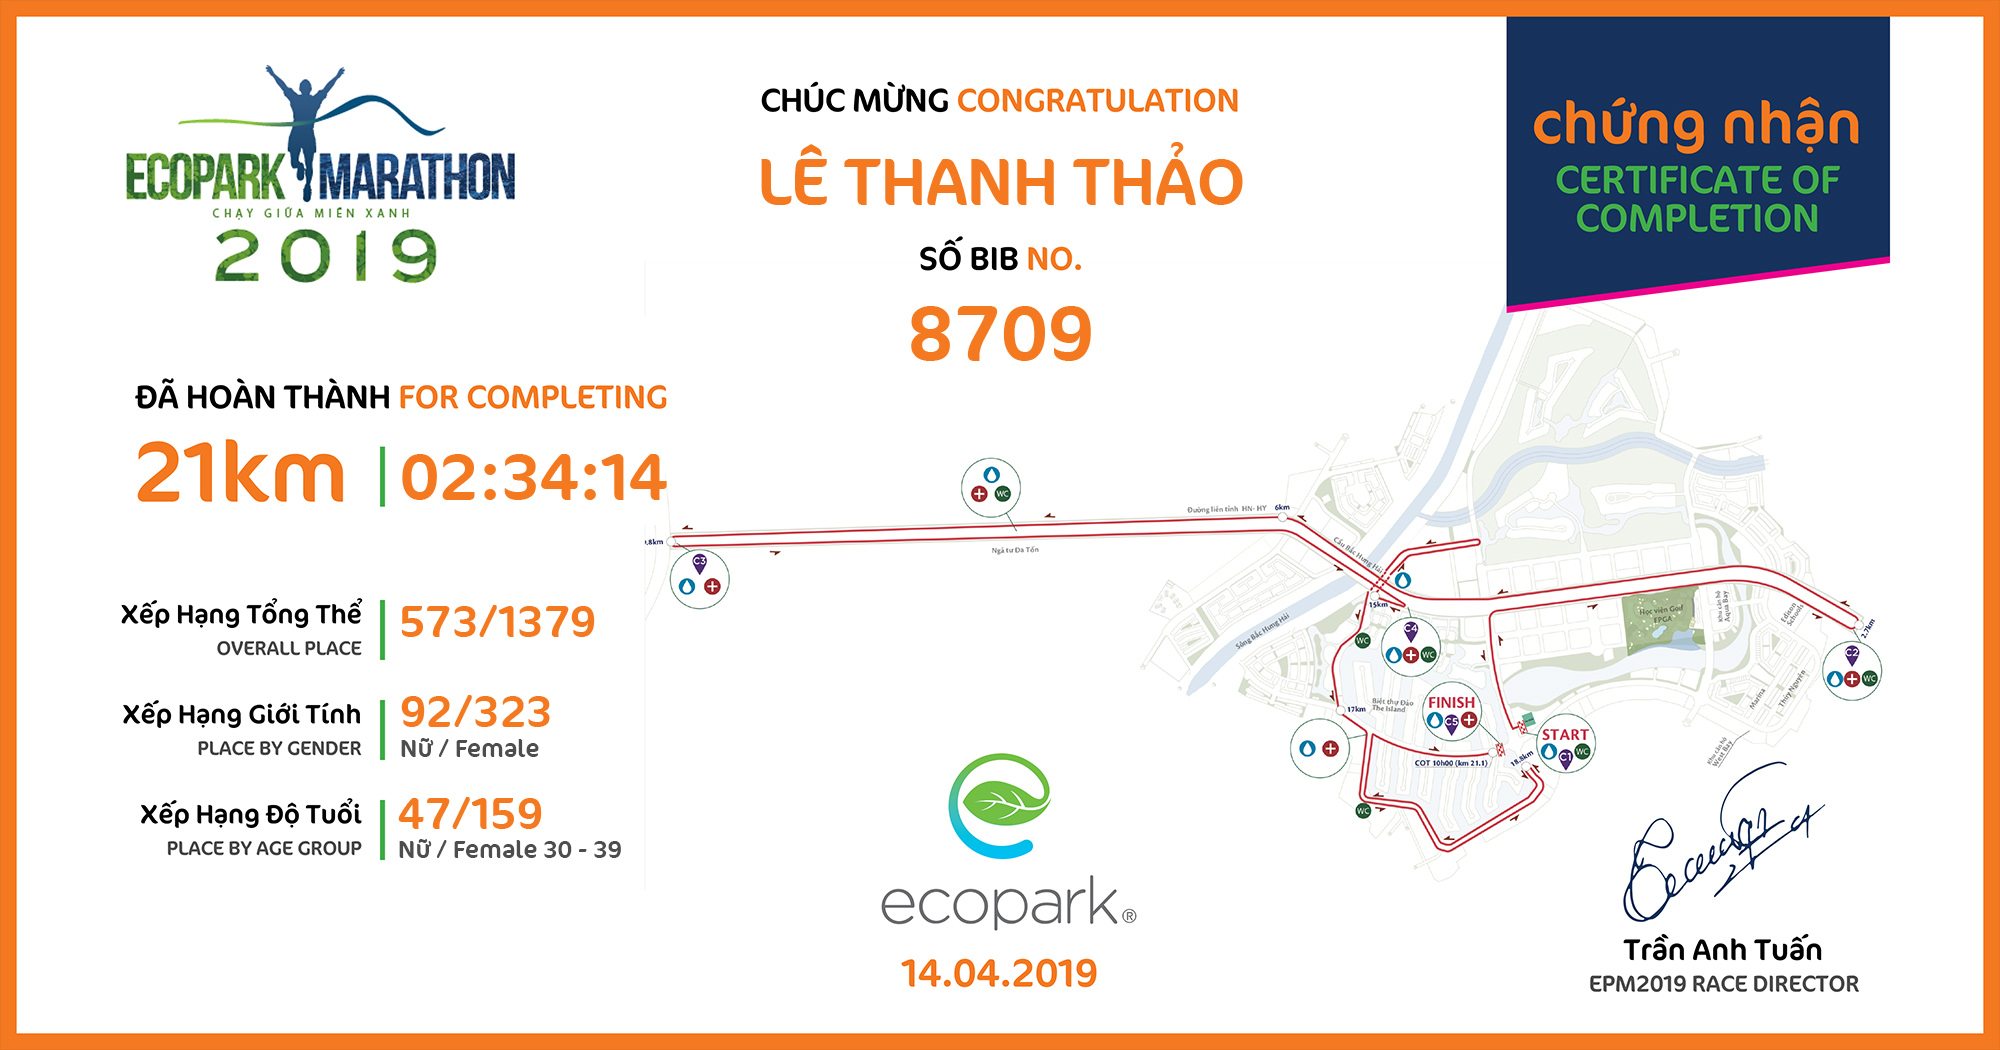 8709 - Lê Thanh Thảo